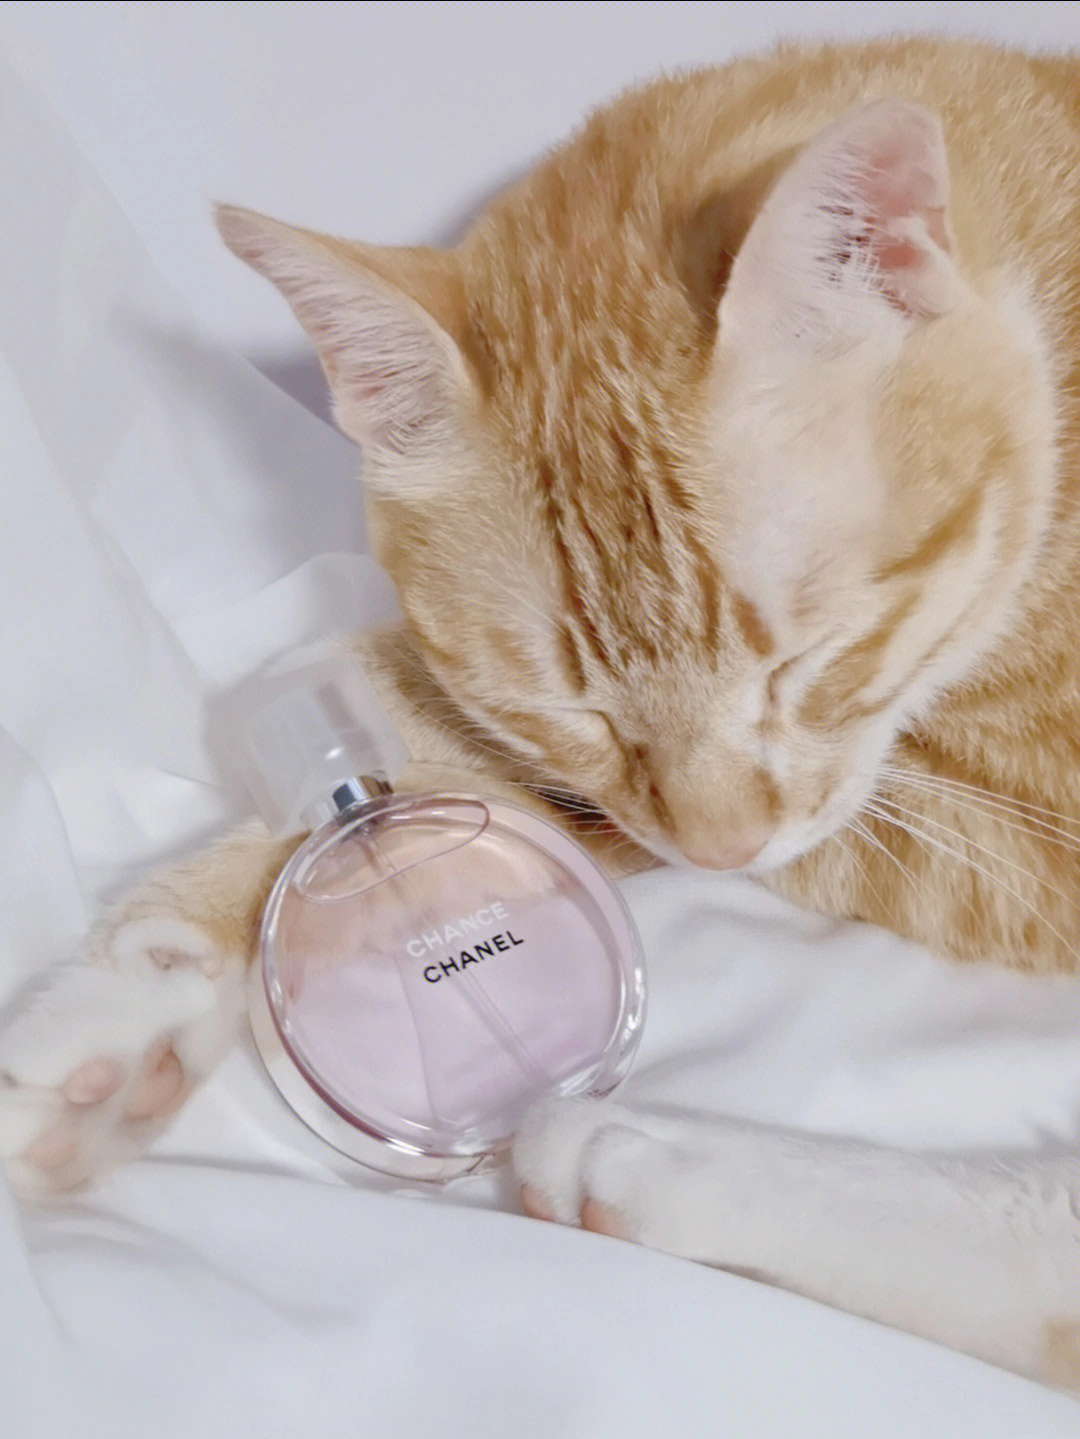 可制香水的香猫图片